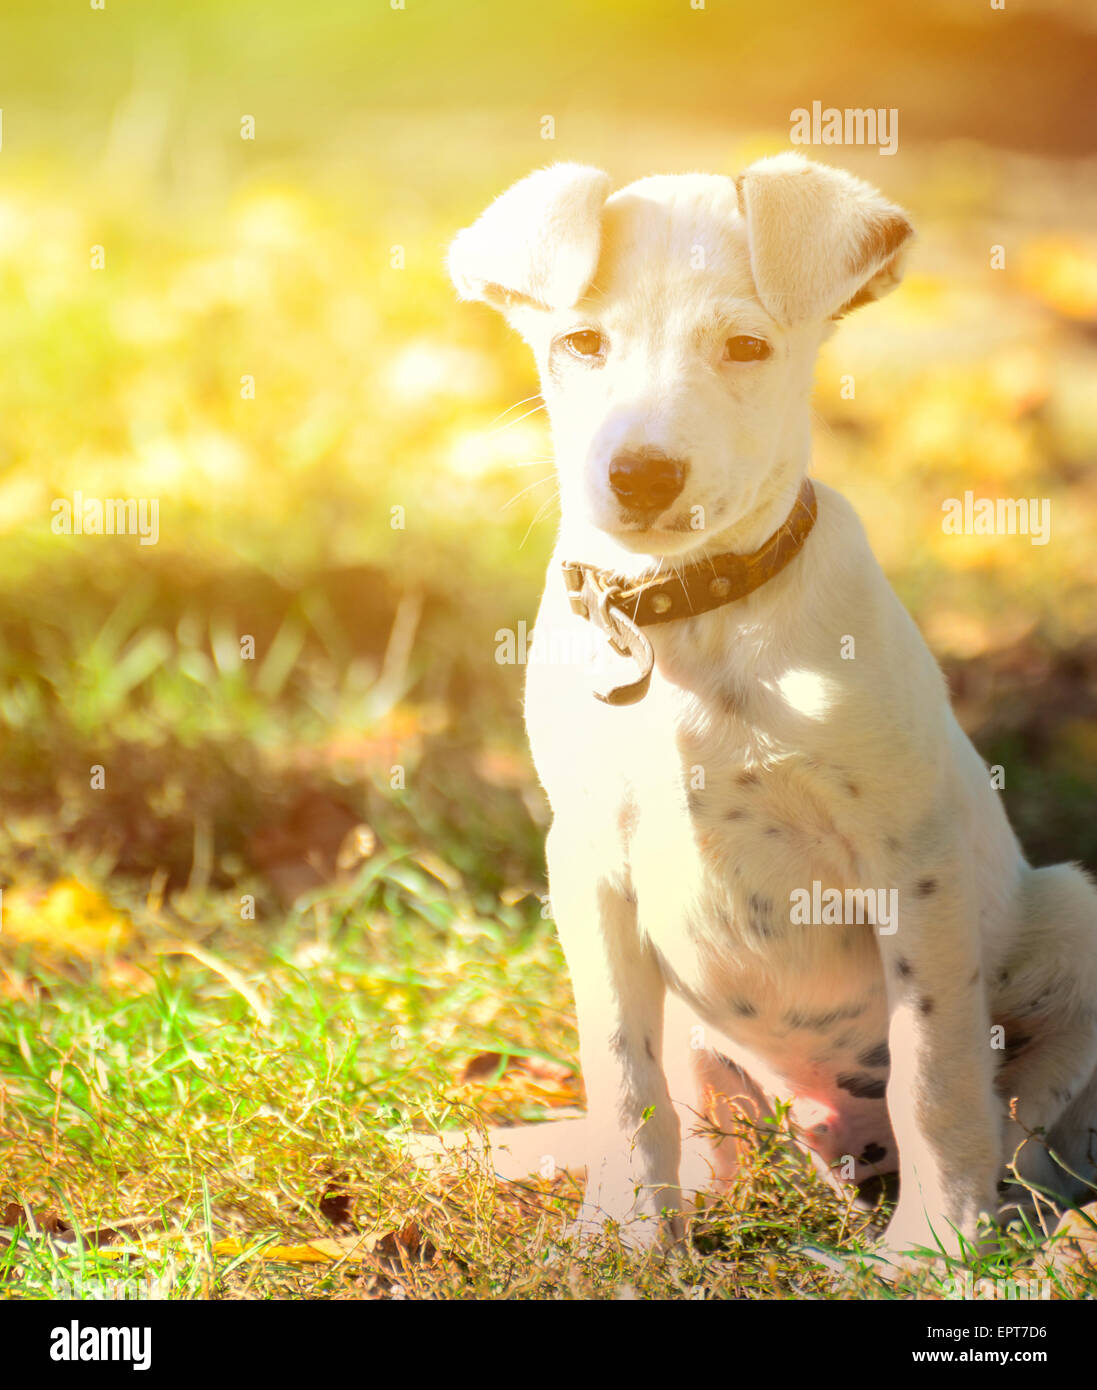 Cute small dog portrait Stock Photo